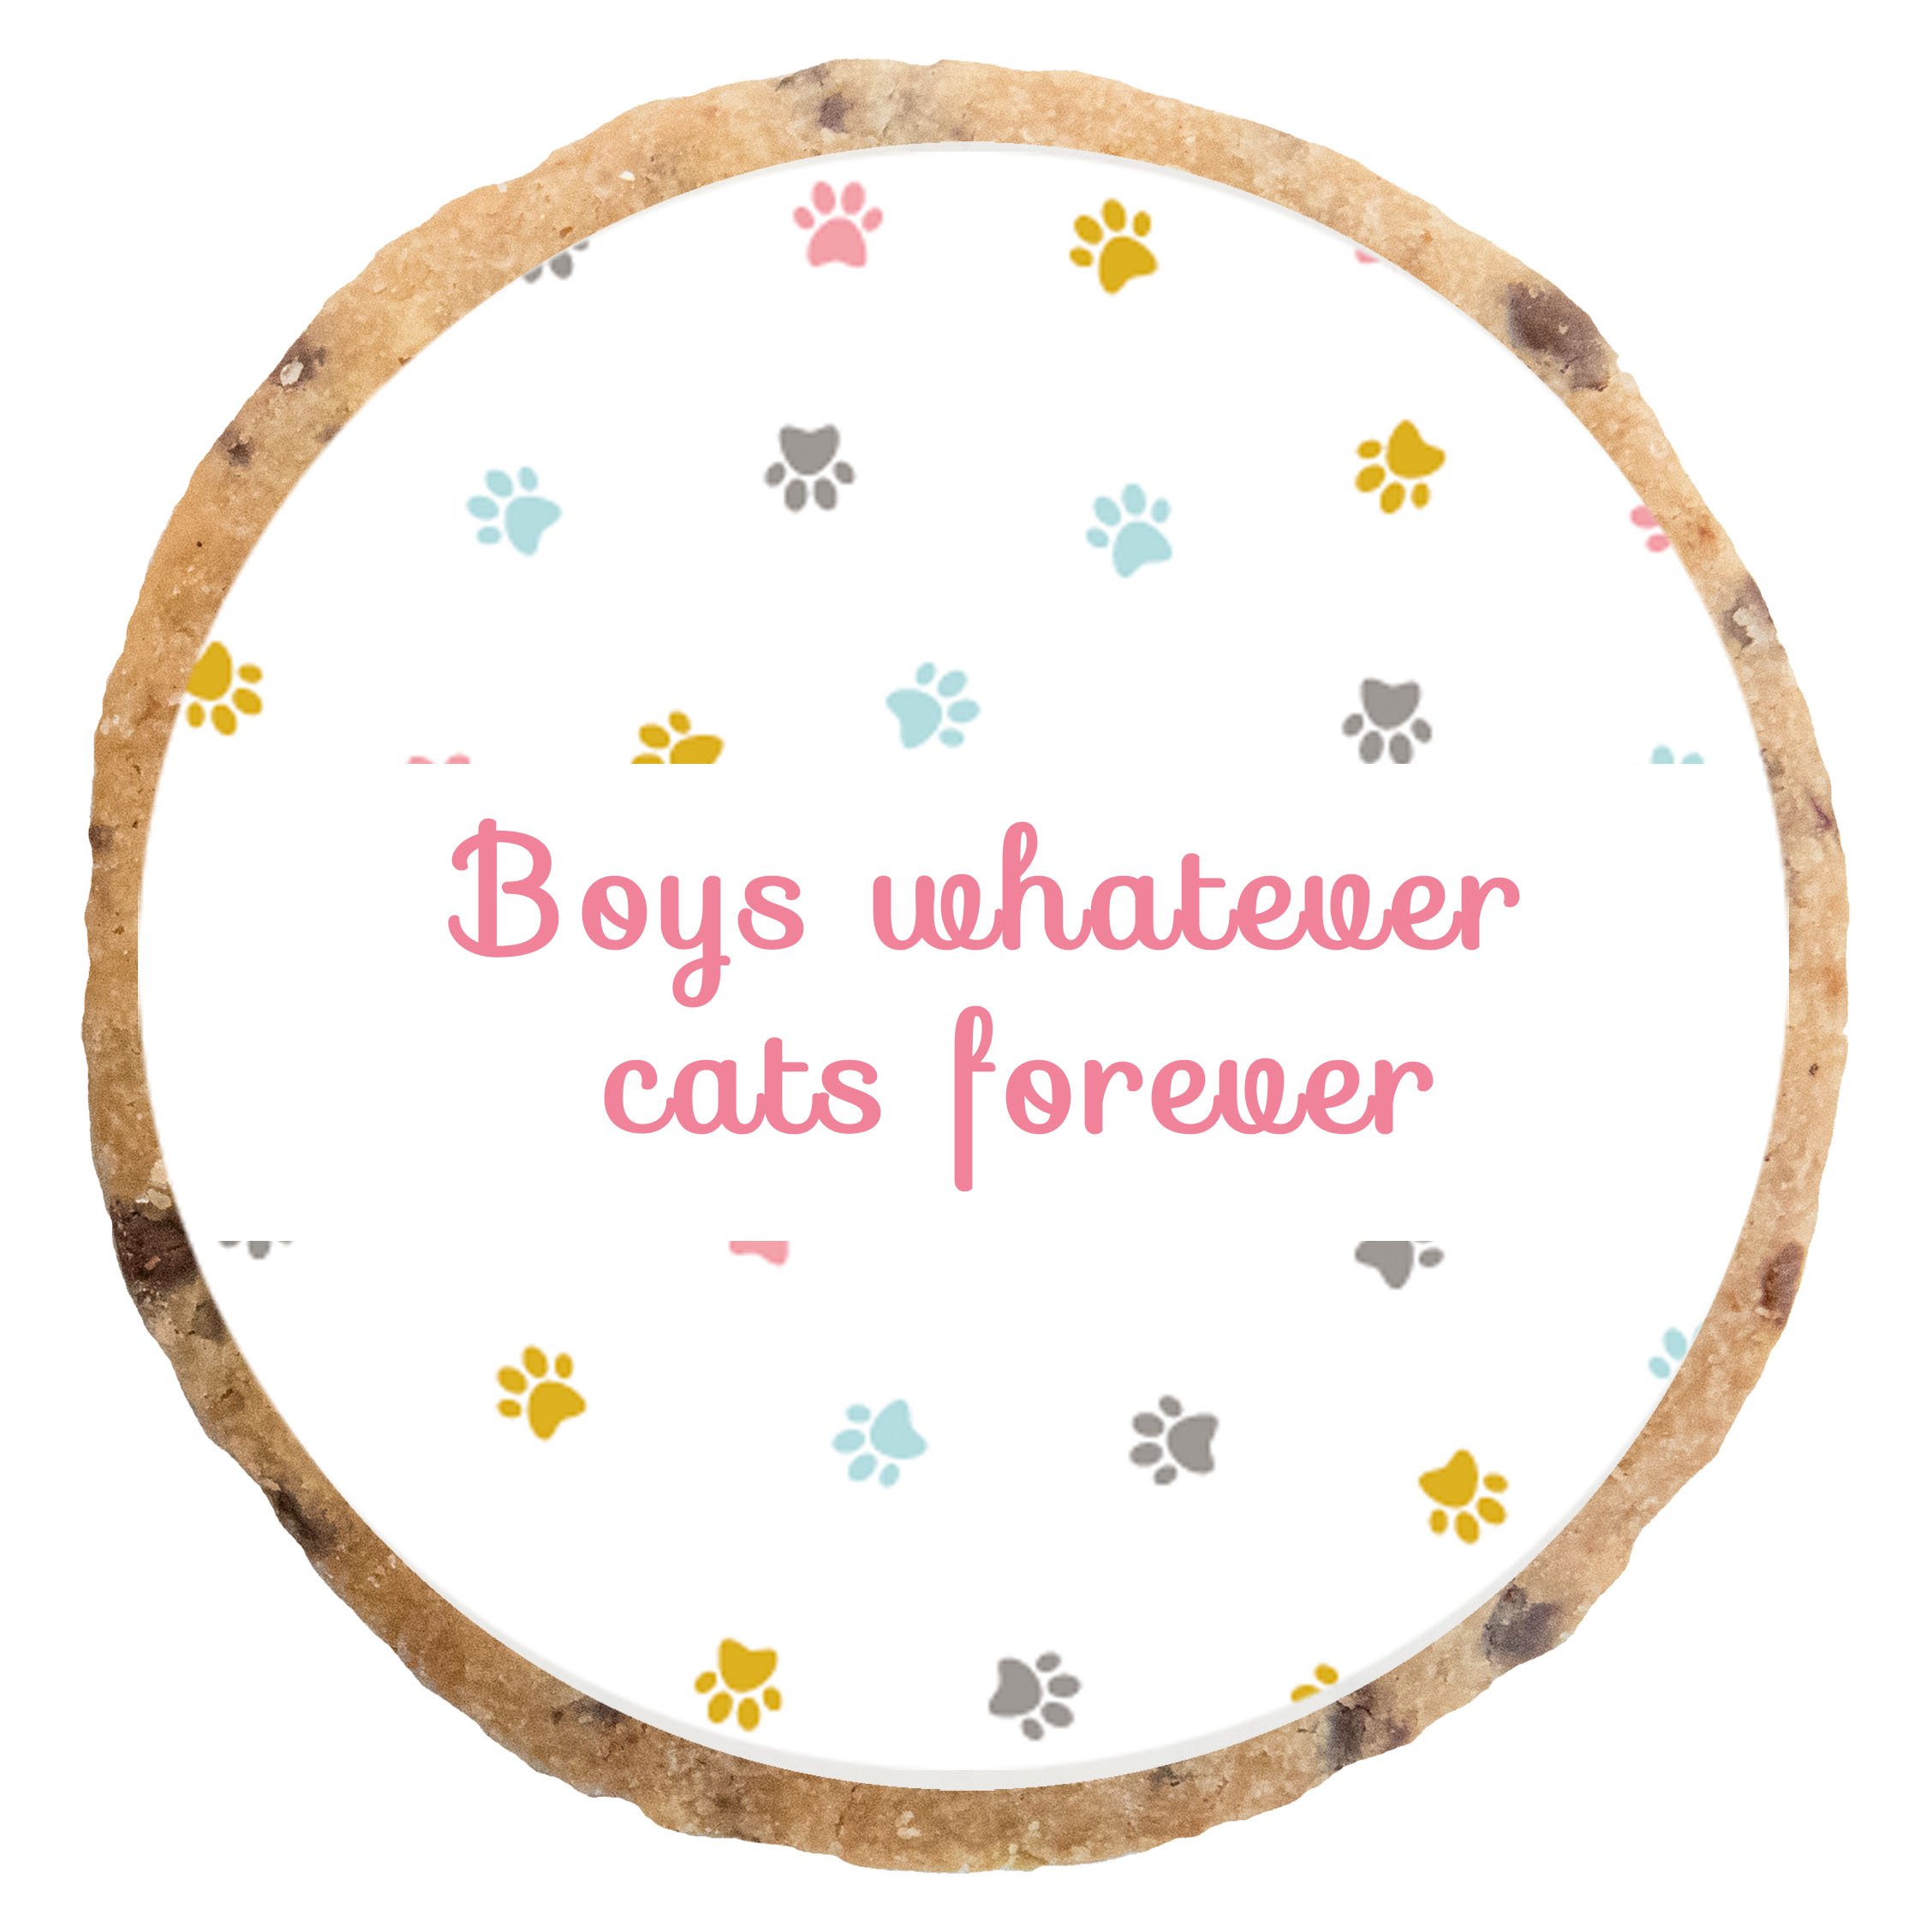 "Boys whatever cats forever" MotivKEKS